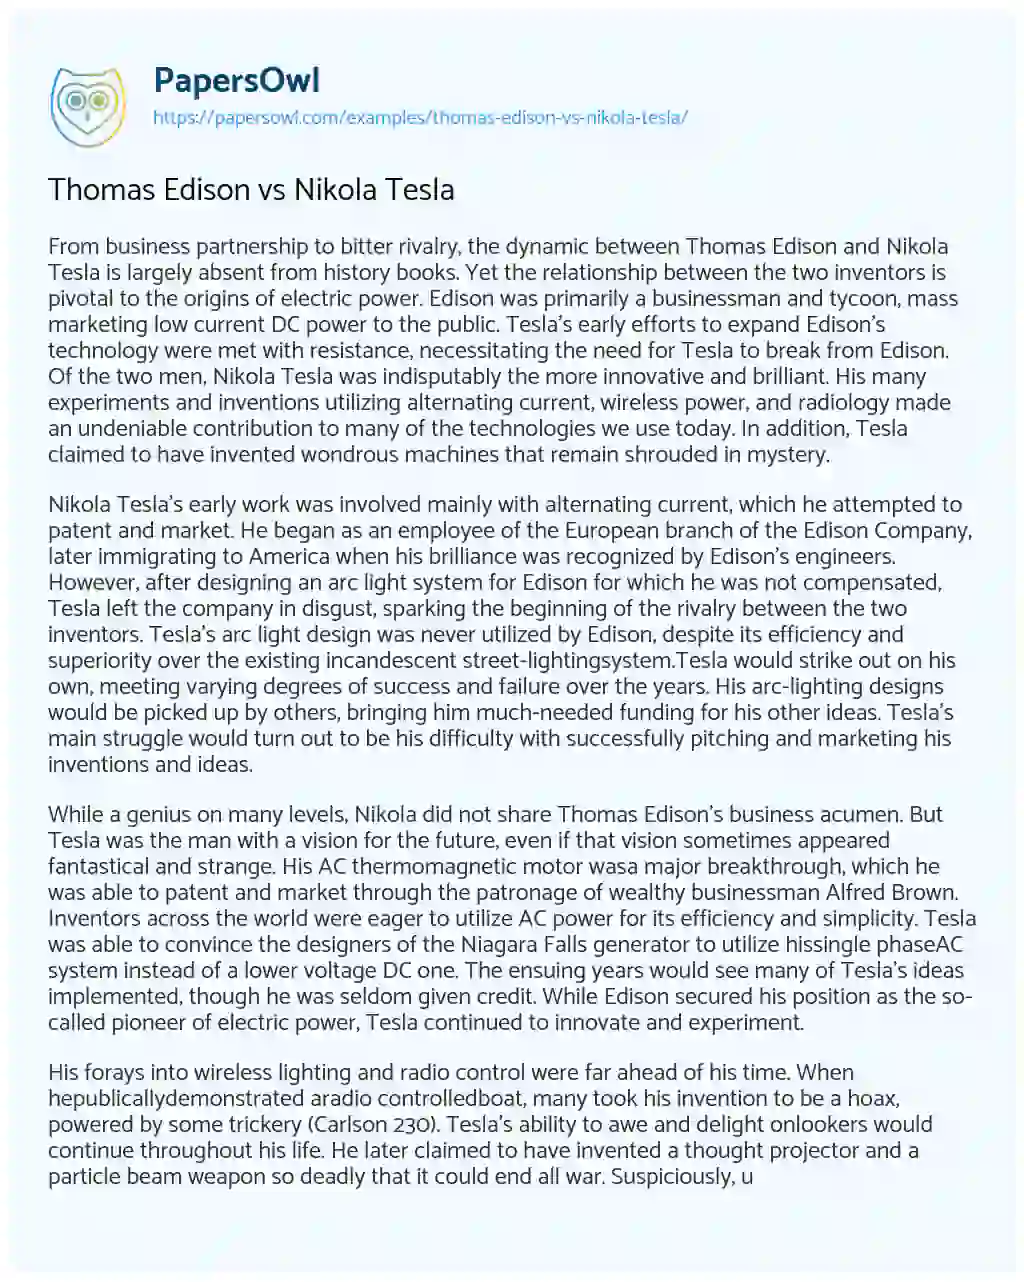 Essay on Thomas Edison Vs Nikola Tesla